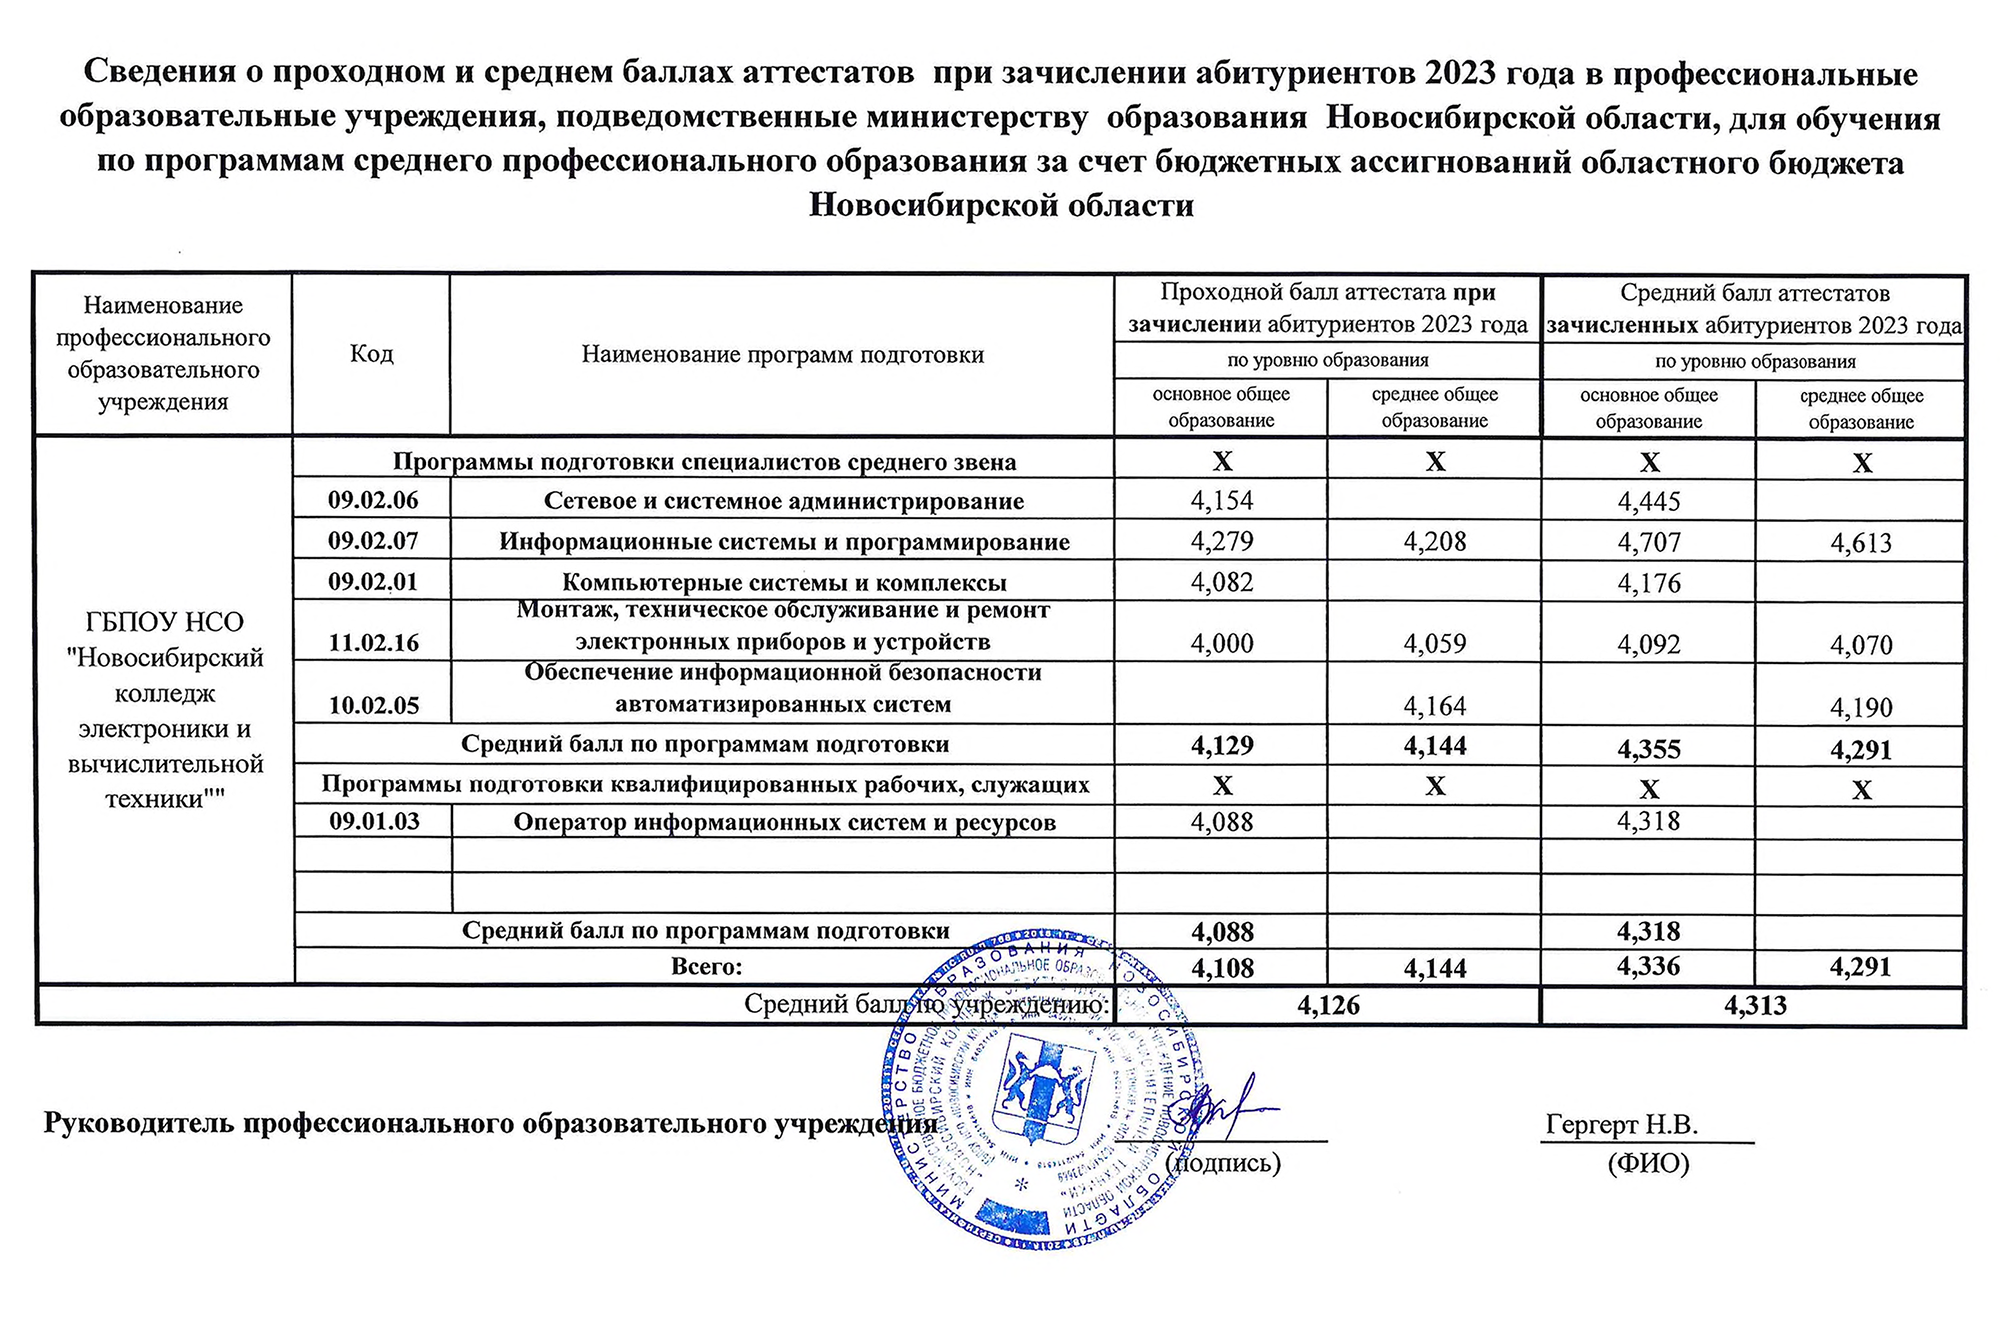 Новосибирский колледж электроники и вычислительной техники раскрывает и проходной, и средний балл абитуриентов предыдущего года. Средний балл намного выше проходного — надежнее ориентироваться на него